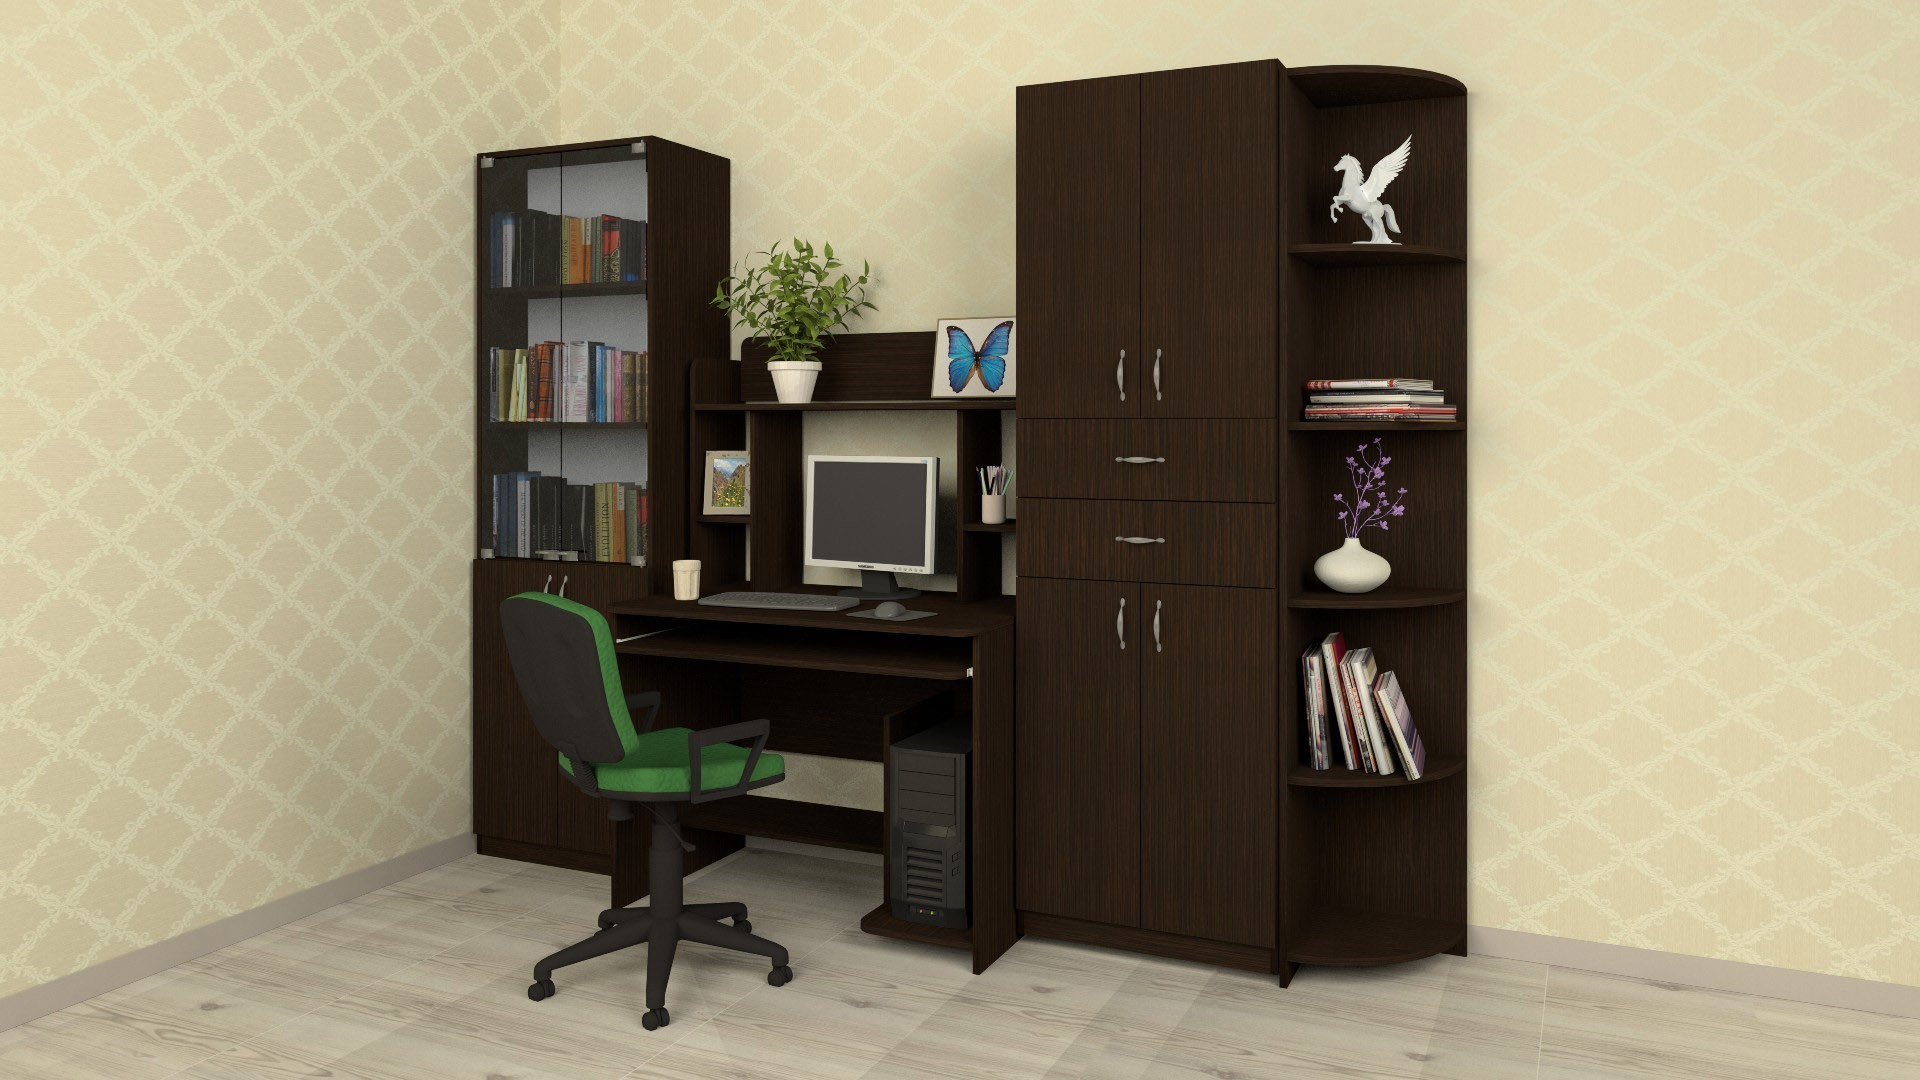 Комплект мебели в комнату СКМ-6